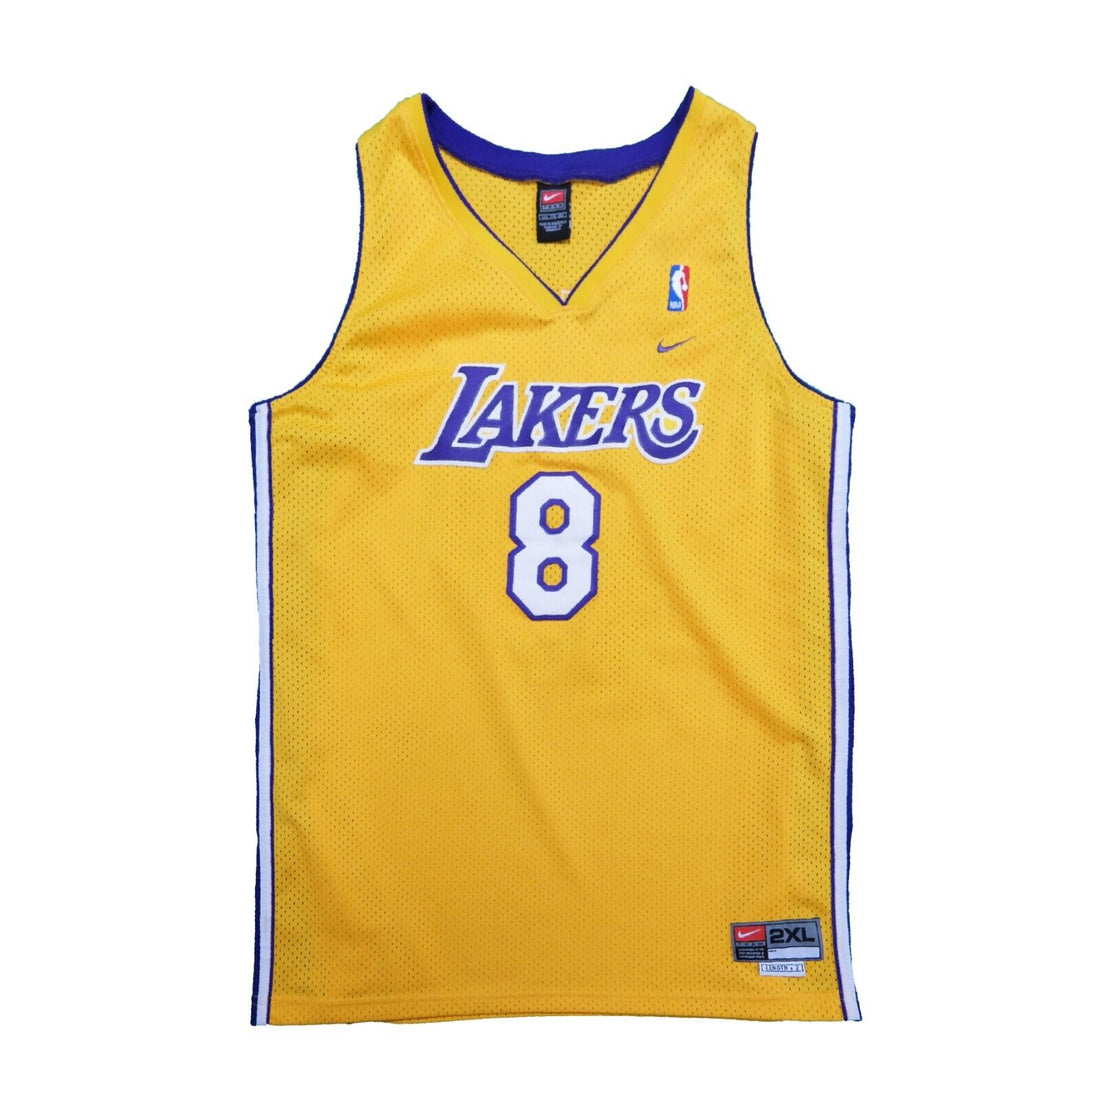 Nike, Shirts, Nike Kobe Bryant Los Angeles Lakers Swingman Jersey 8  Stitched Nba Basketball